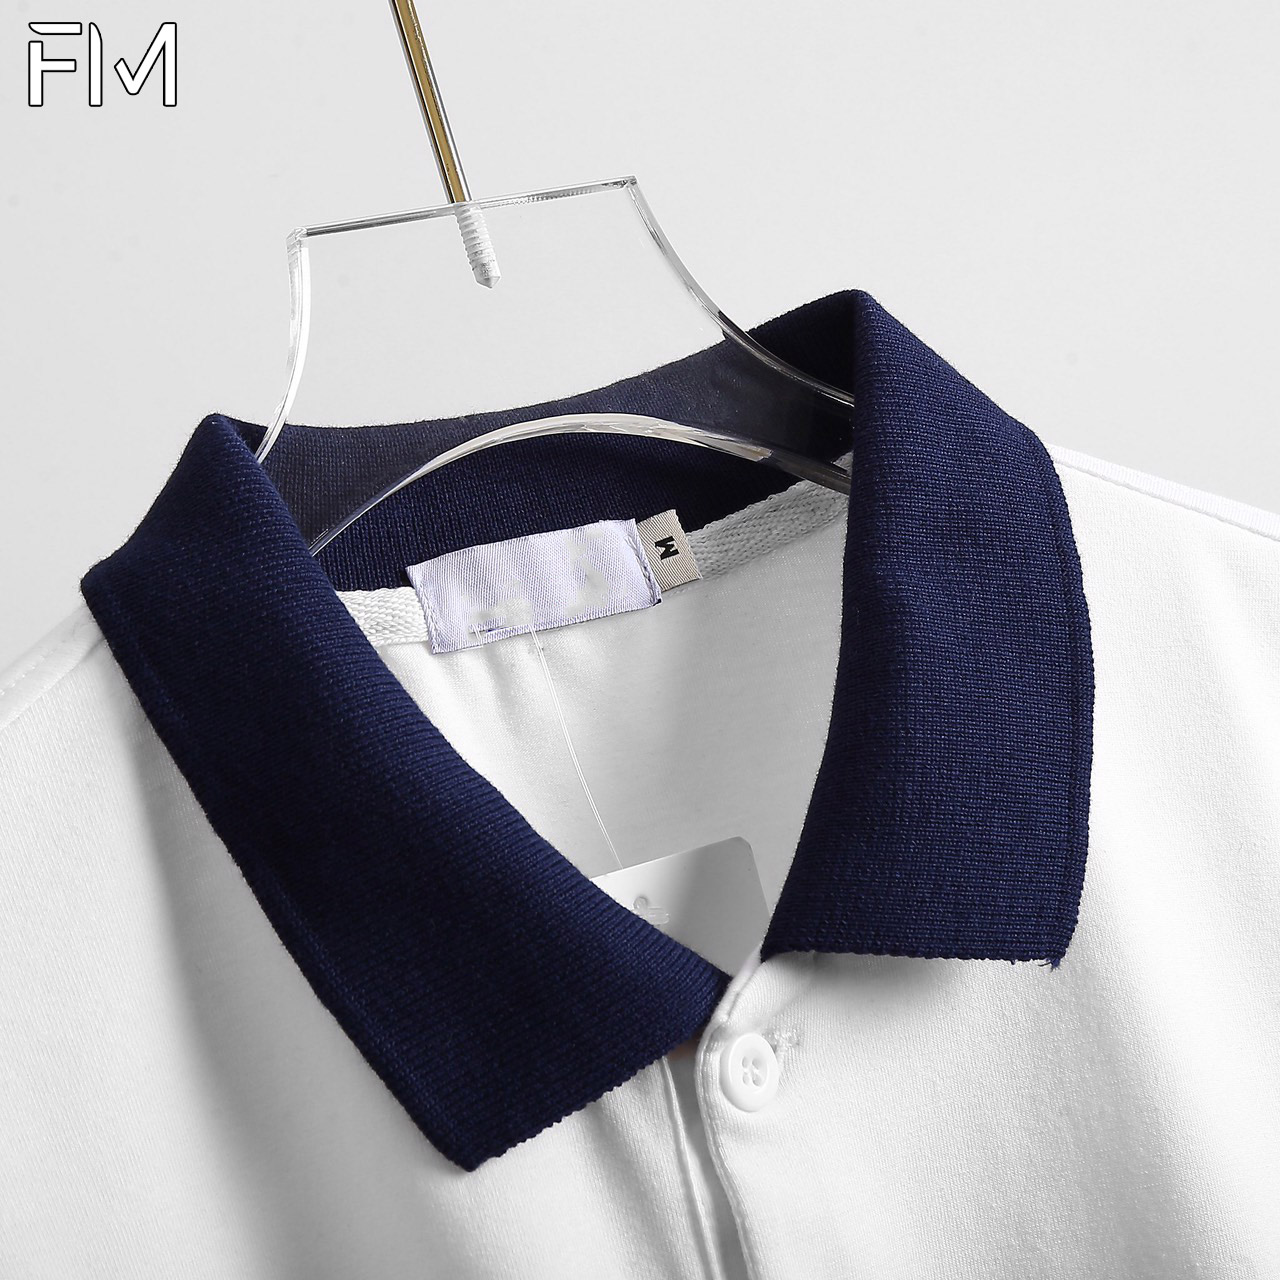 Áo Polo nam cổ bẻ ngắn tay, chất liệu cao cấp, thoáng mát, bền màu, thiết kế trẻ trung – FORMEN SHOP – FMPS143